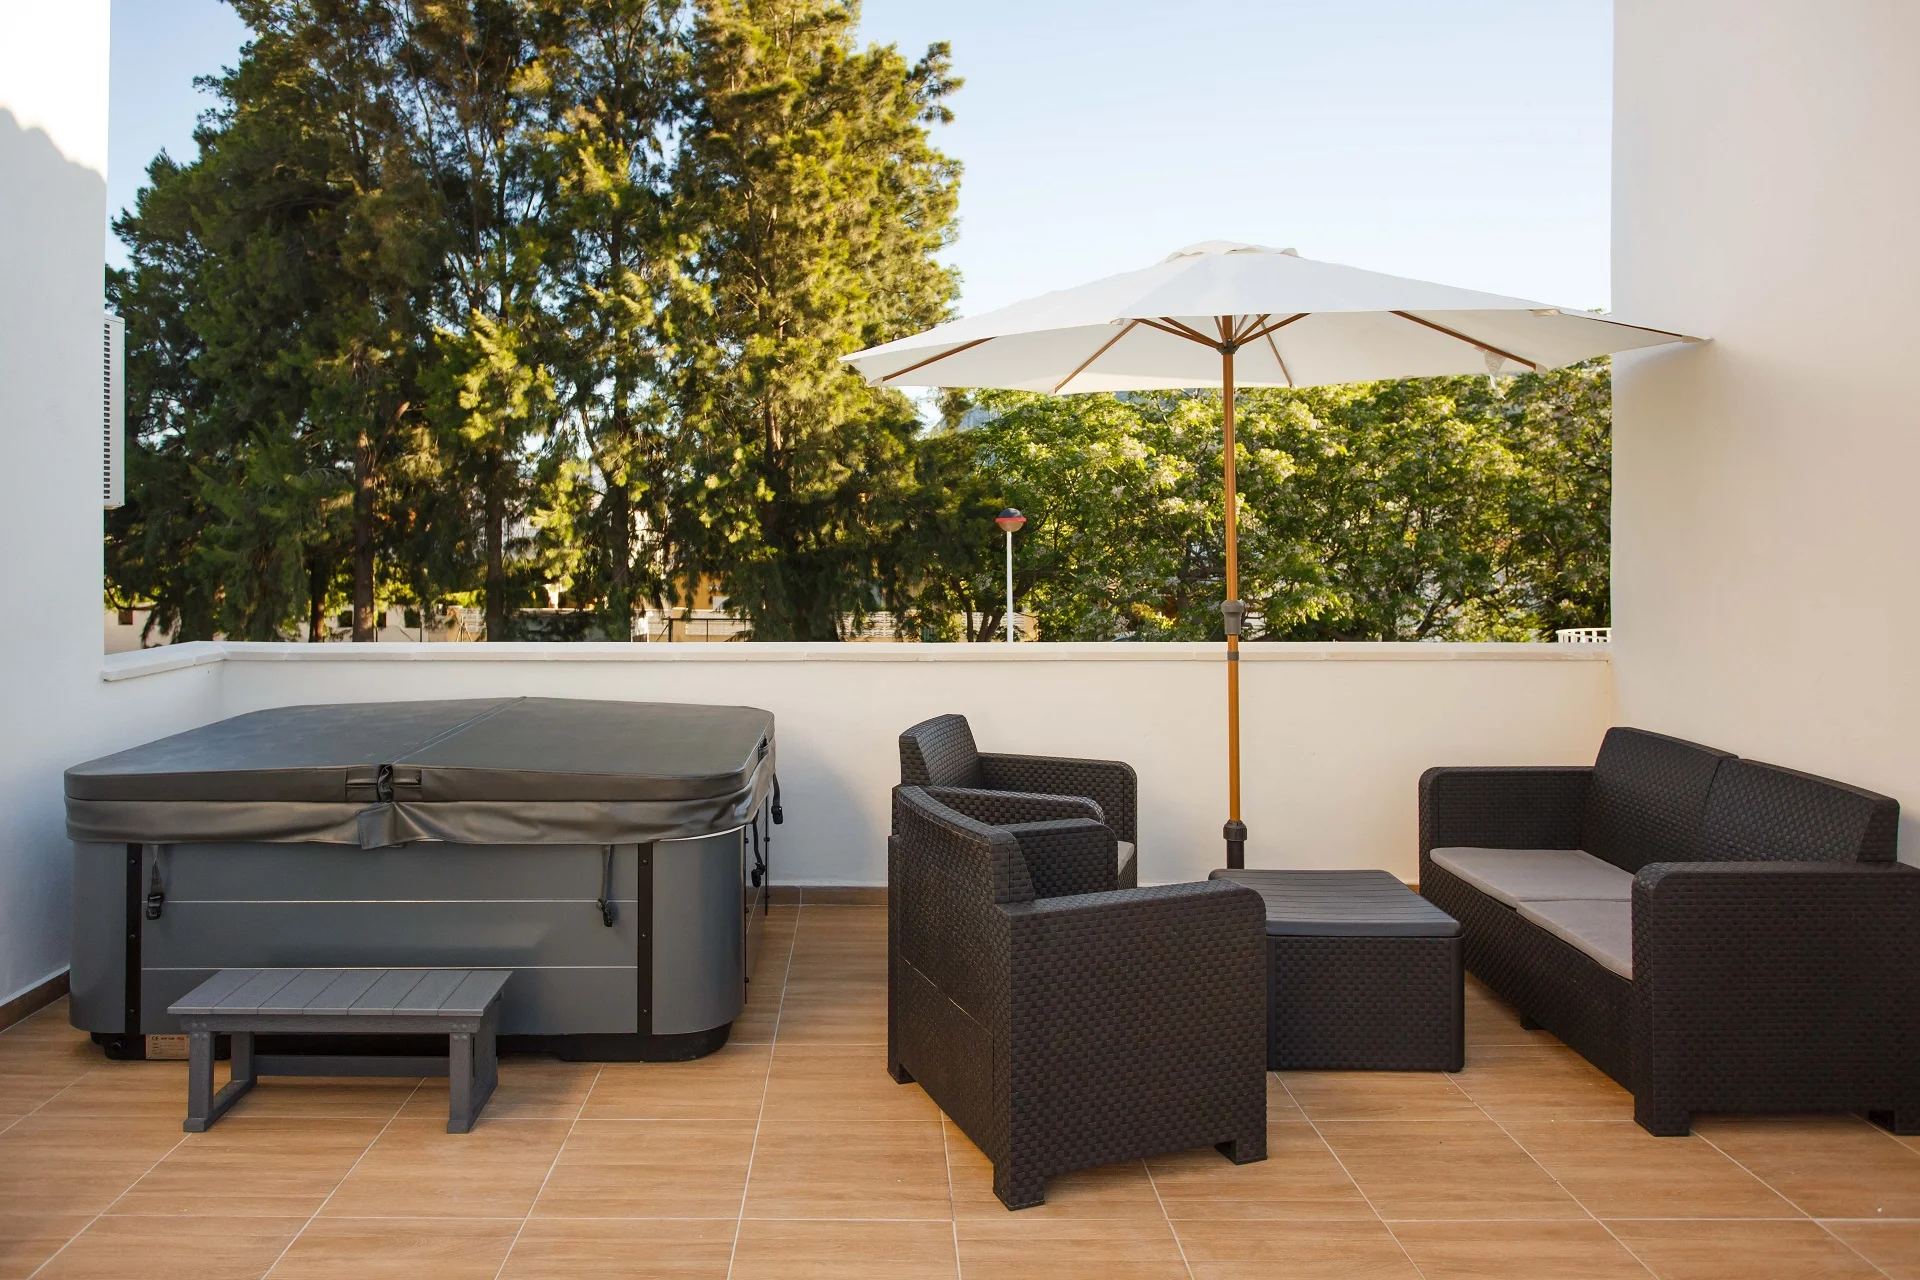 Disfruta de unas vacaciones fascinantes en Denia en Casa Felizia, donde la tranquilidad y relajación se funden en esta hermosa terraza con vistas panorámicas. ¡Visítanos y vive momentos inolvidables!